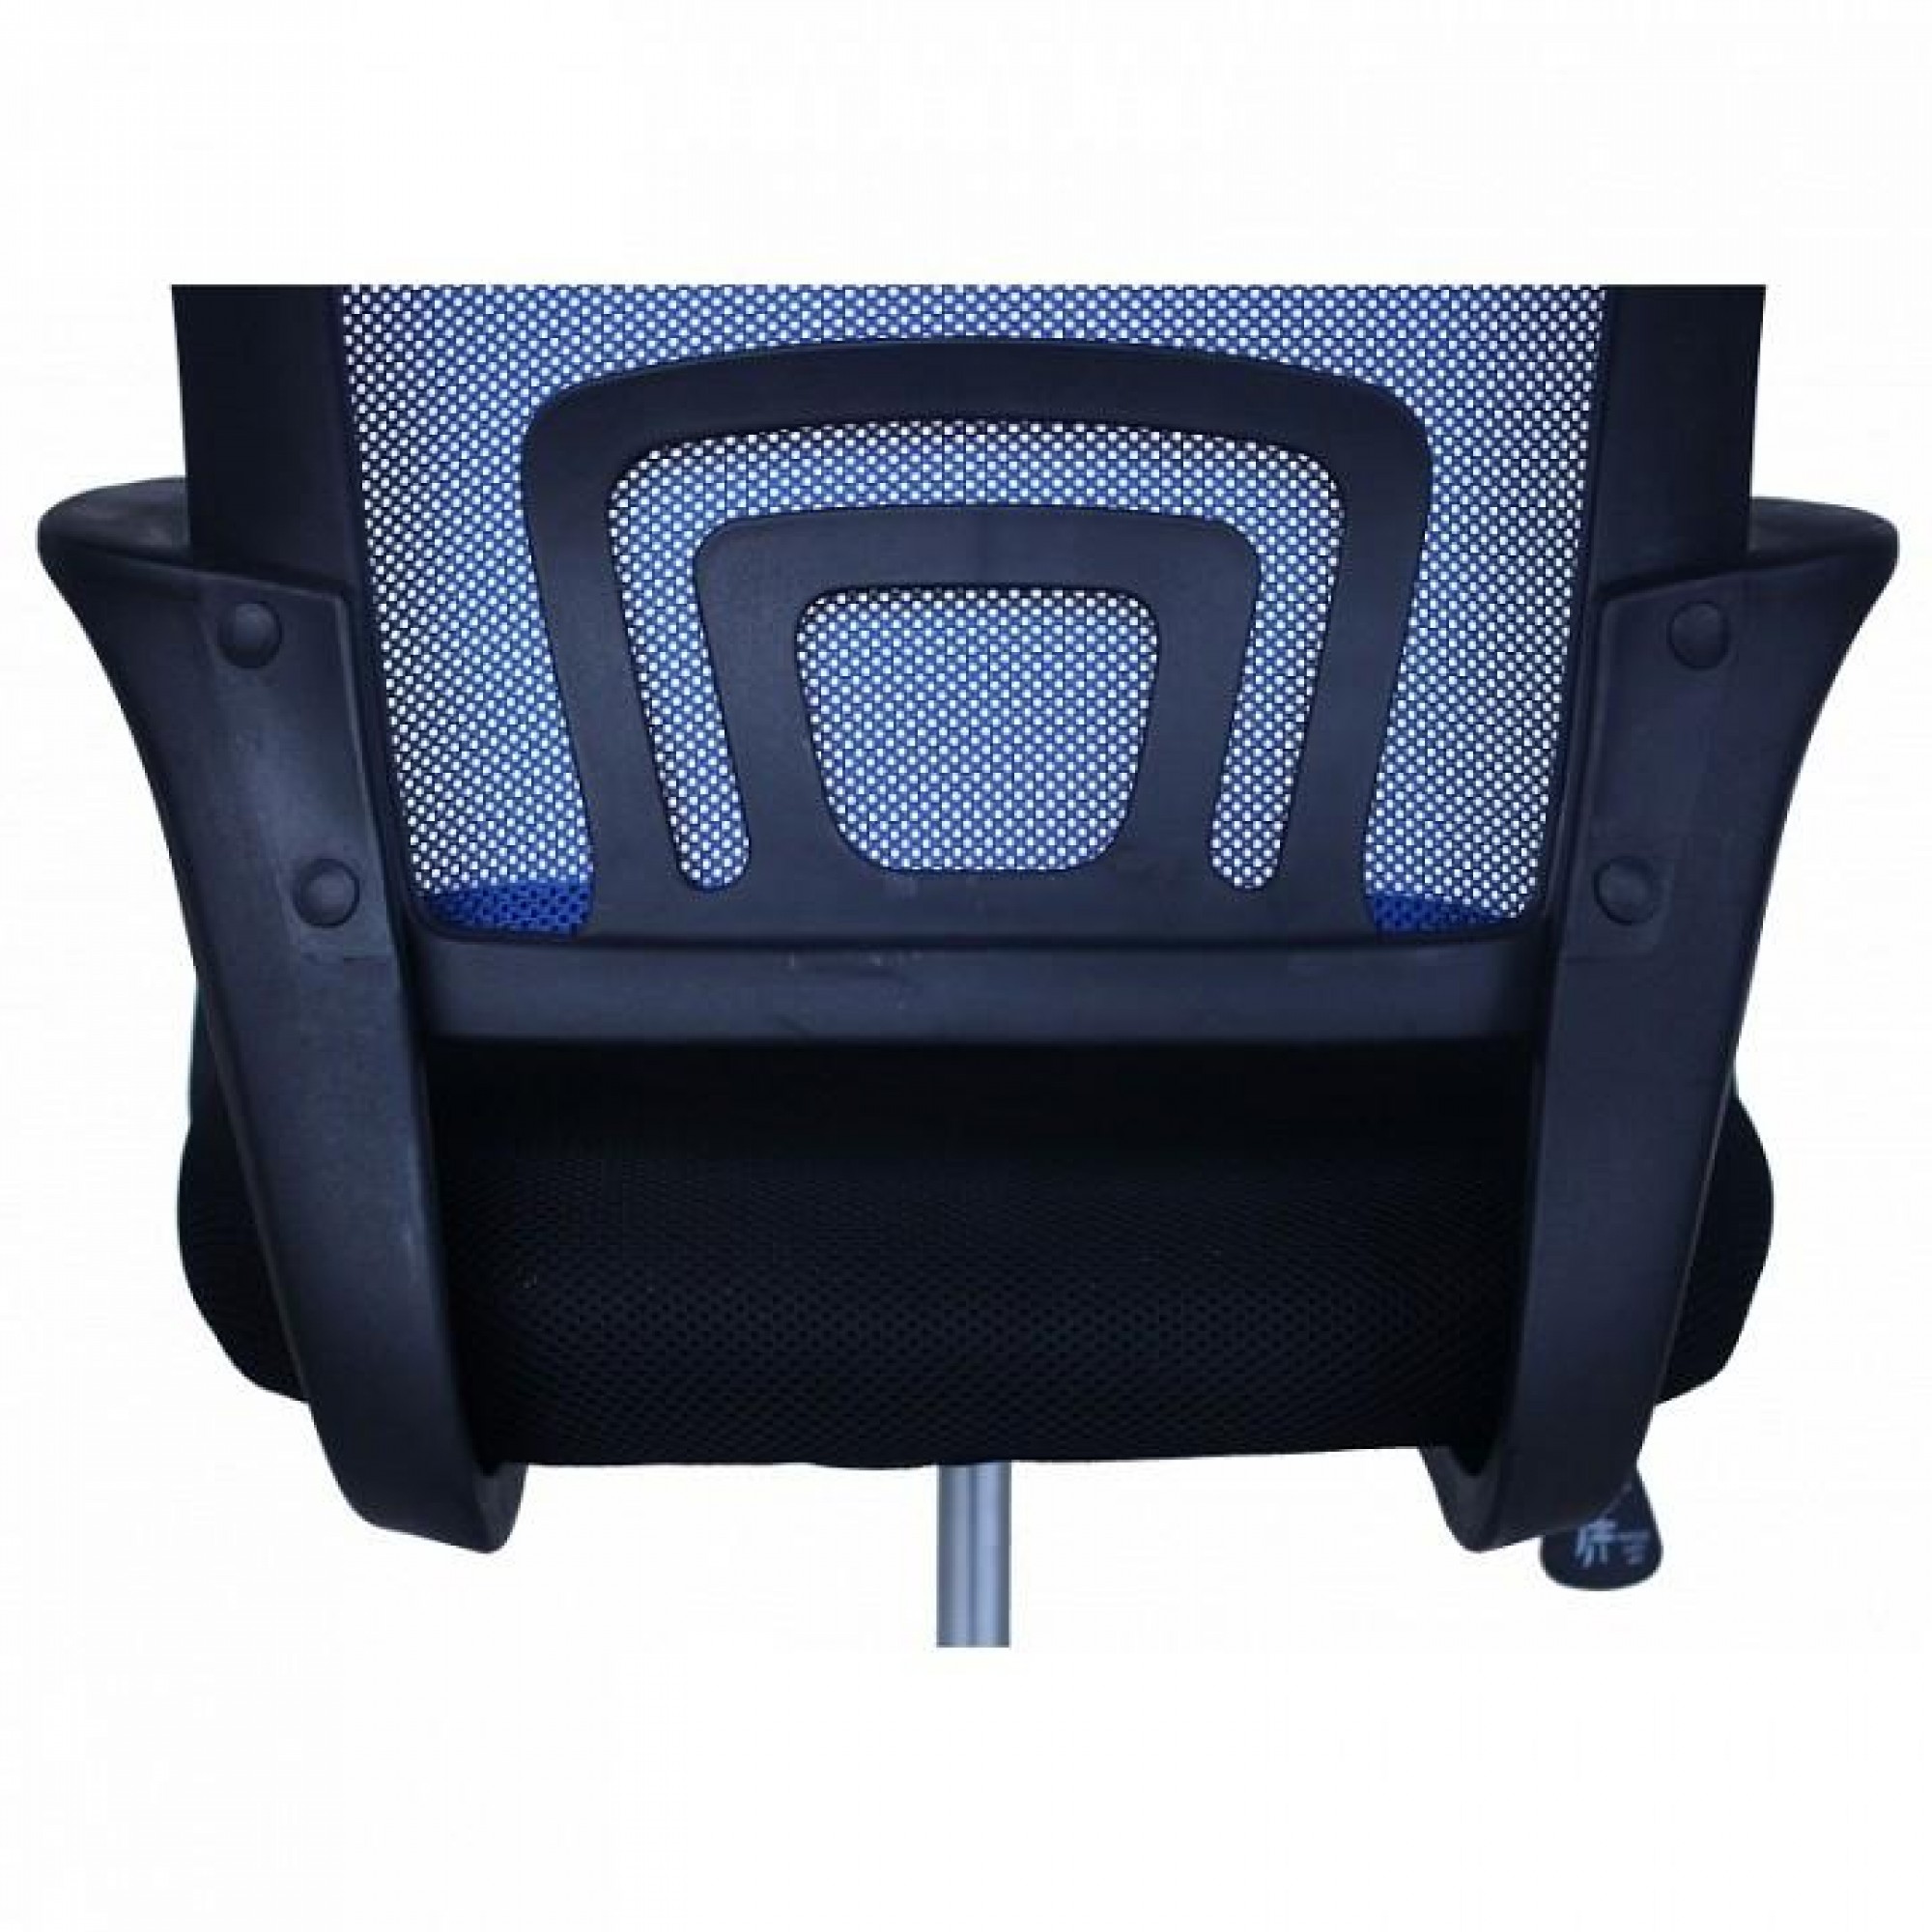 Кресло компьютерное MF-696 404491, MF-696 blue